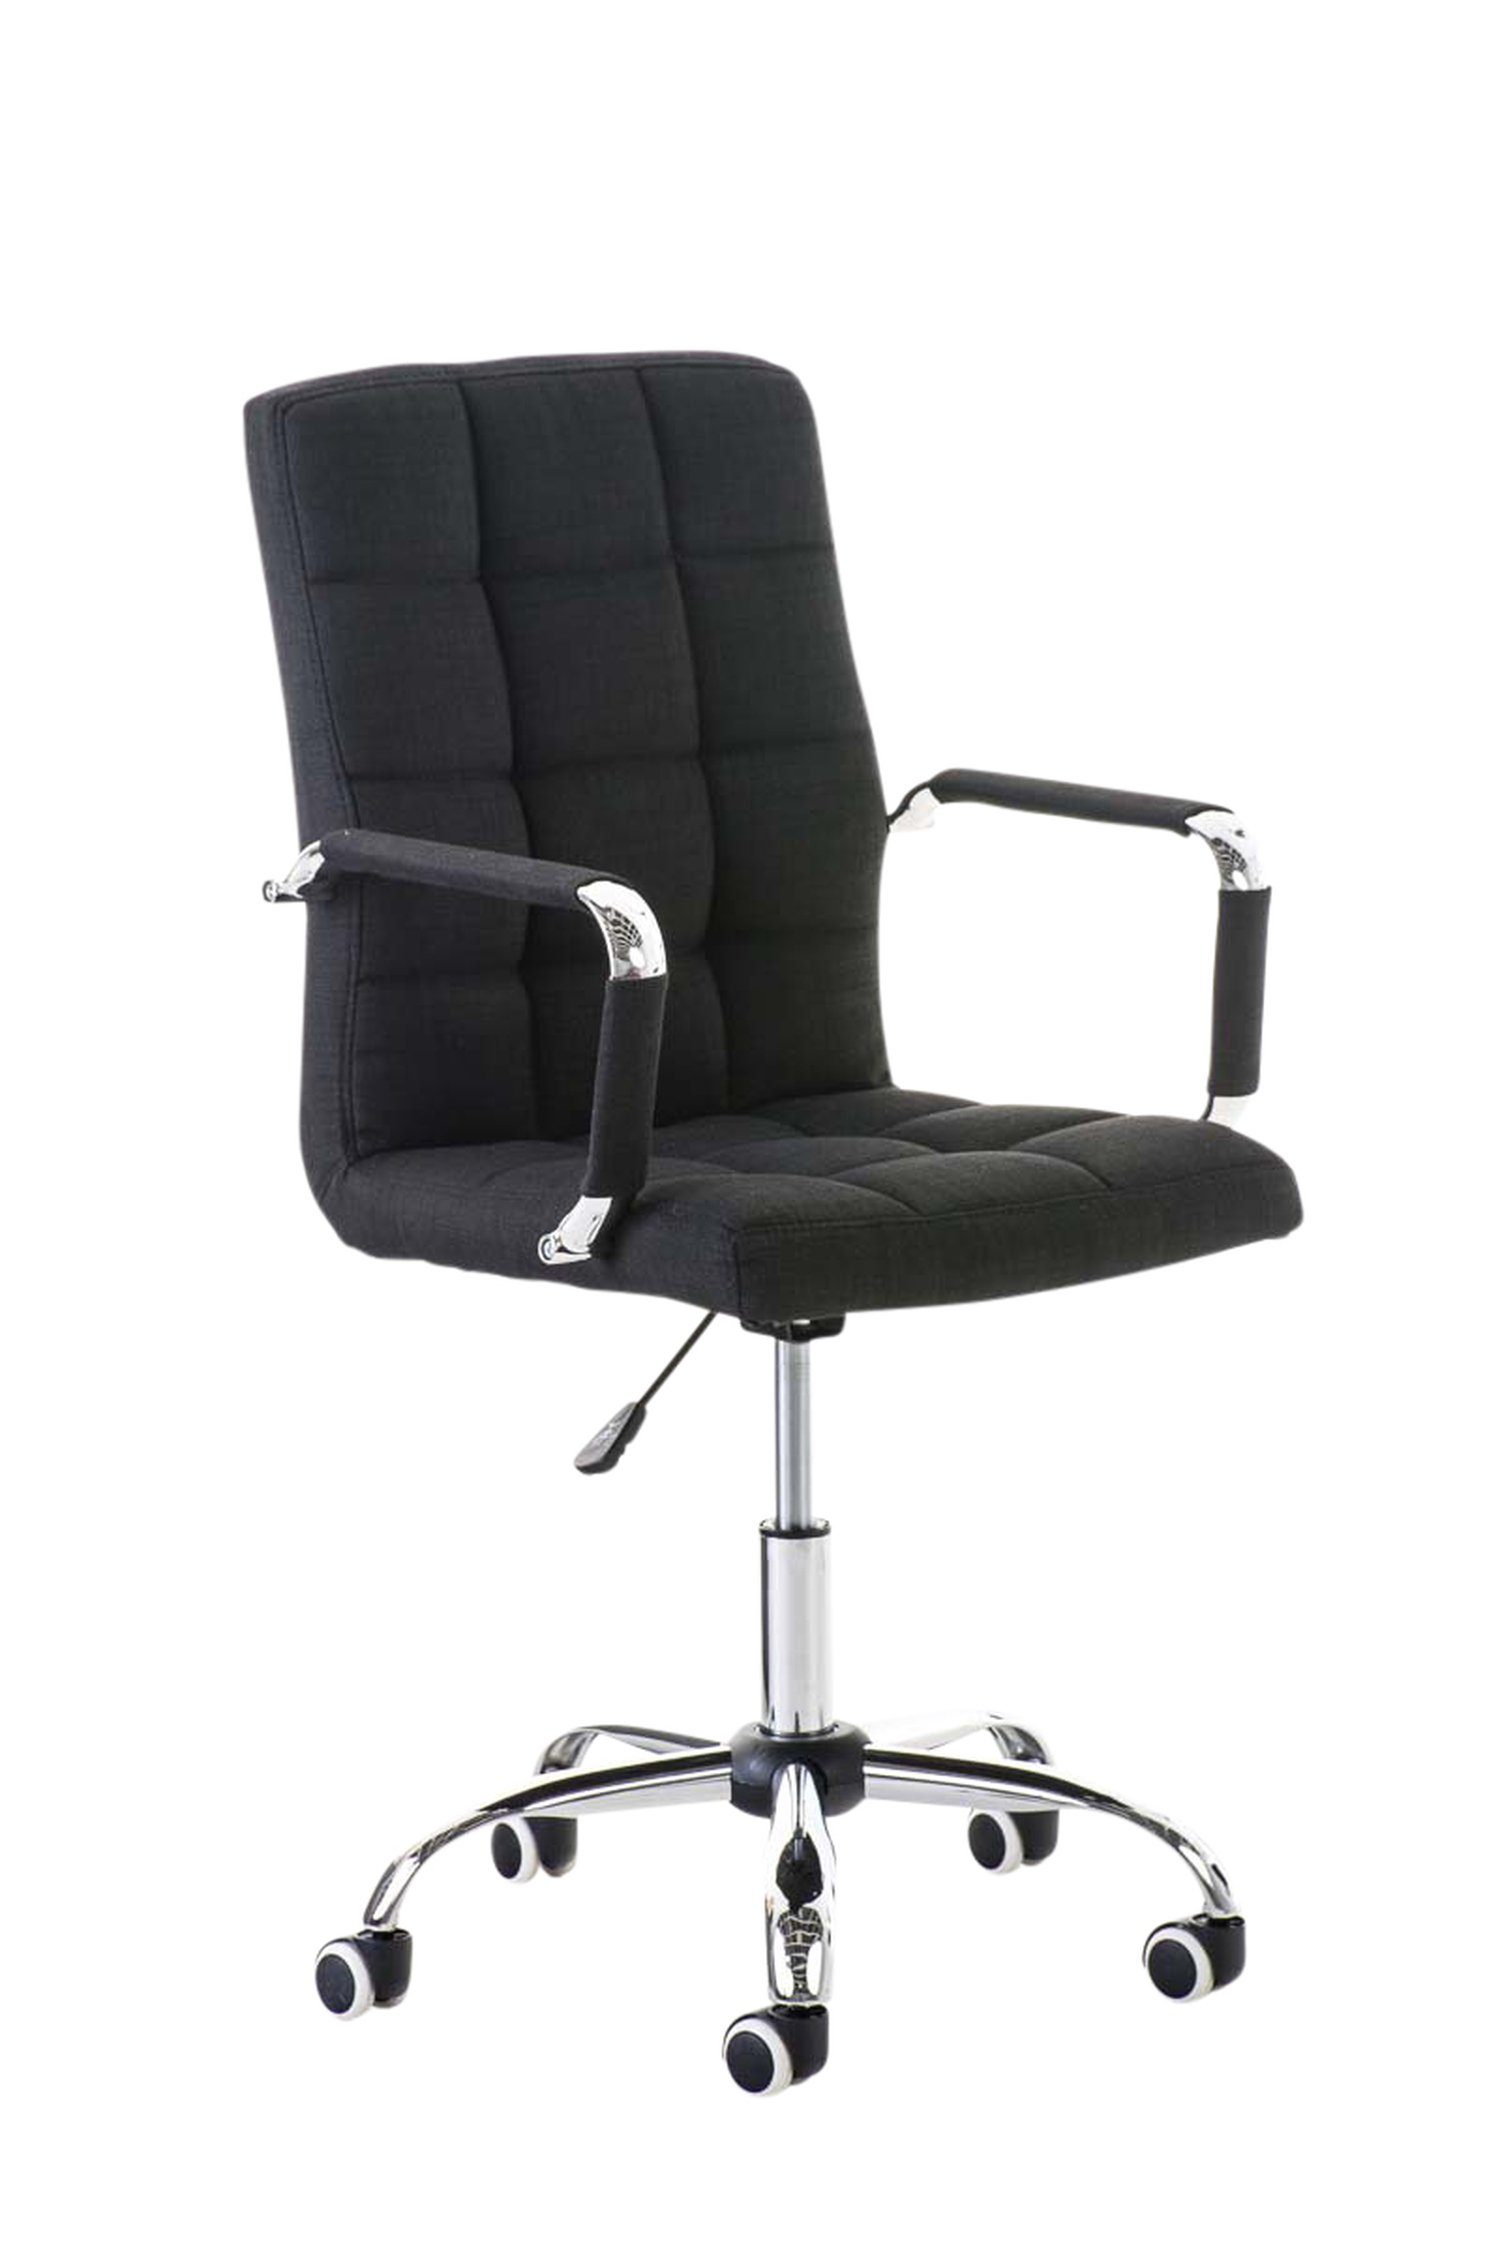 TPFLiving Bürostuhl Deal V2 mit bequemer Rückenlehne - höhenverstellbar und 360° drehbar (Schreibtischstuhl, Drehstuhl, Chefsessel, Bürostuhl XXL), Gestell: Metall chrom - Sitzfläche: Stoff schwarz